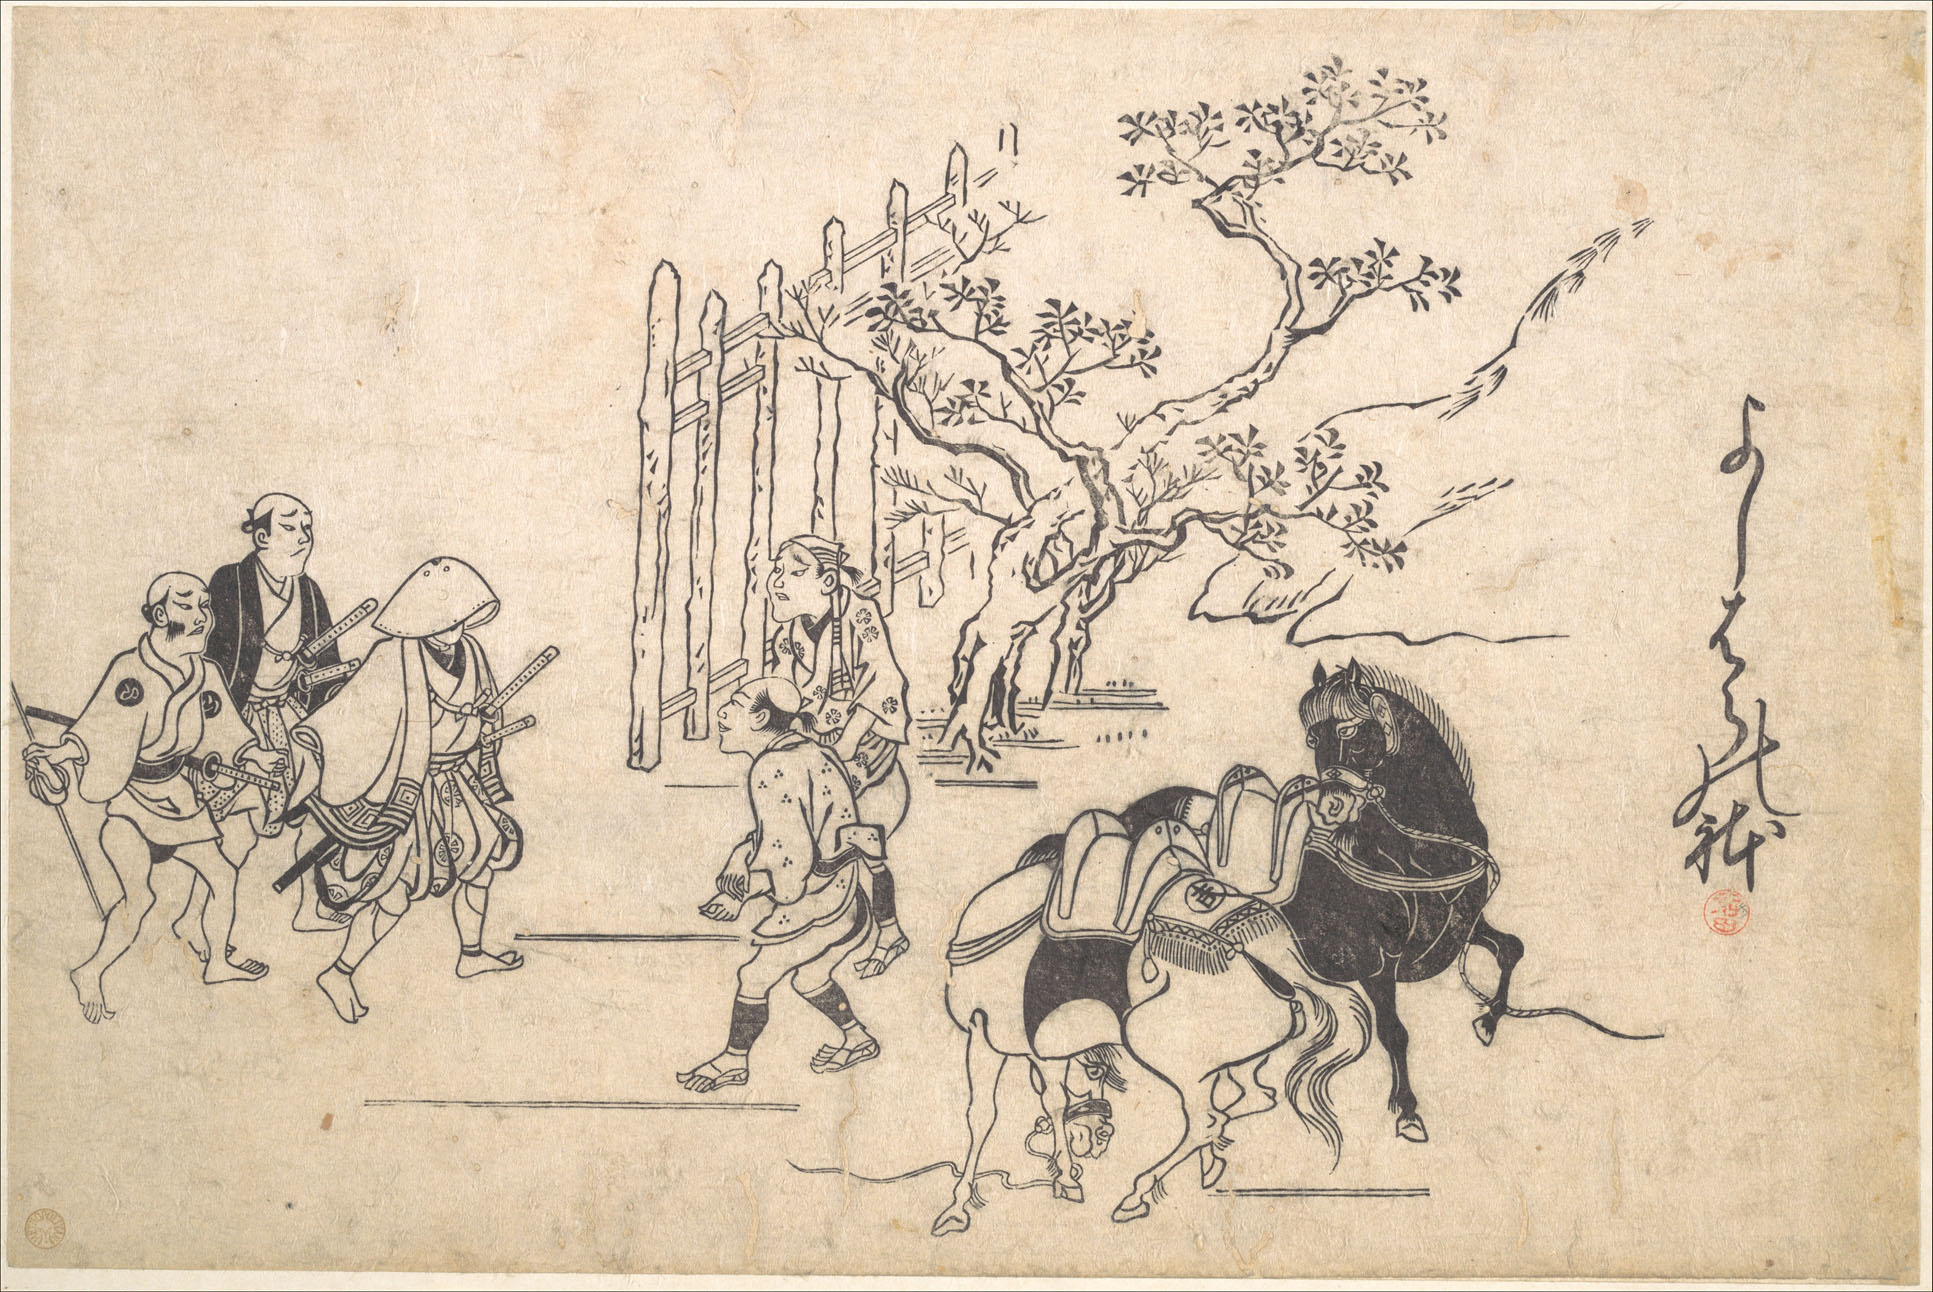 Моронобу Хисикава. "Двое молодых самураев". Около 1680.